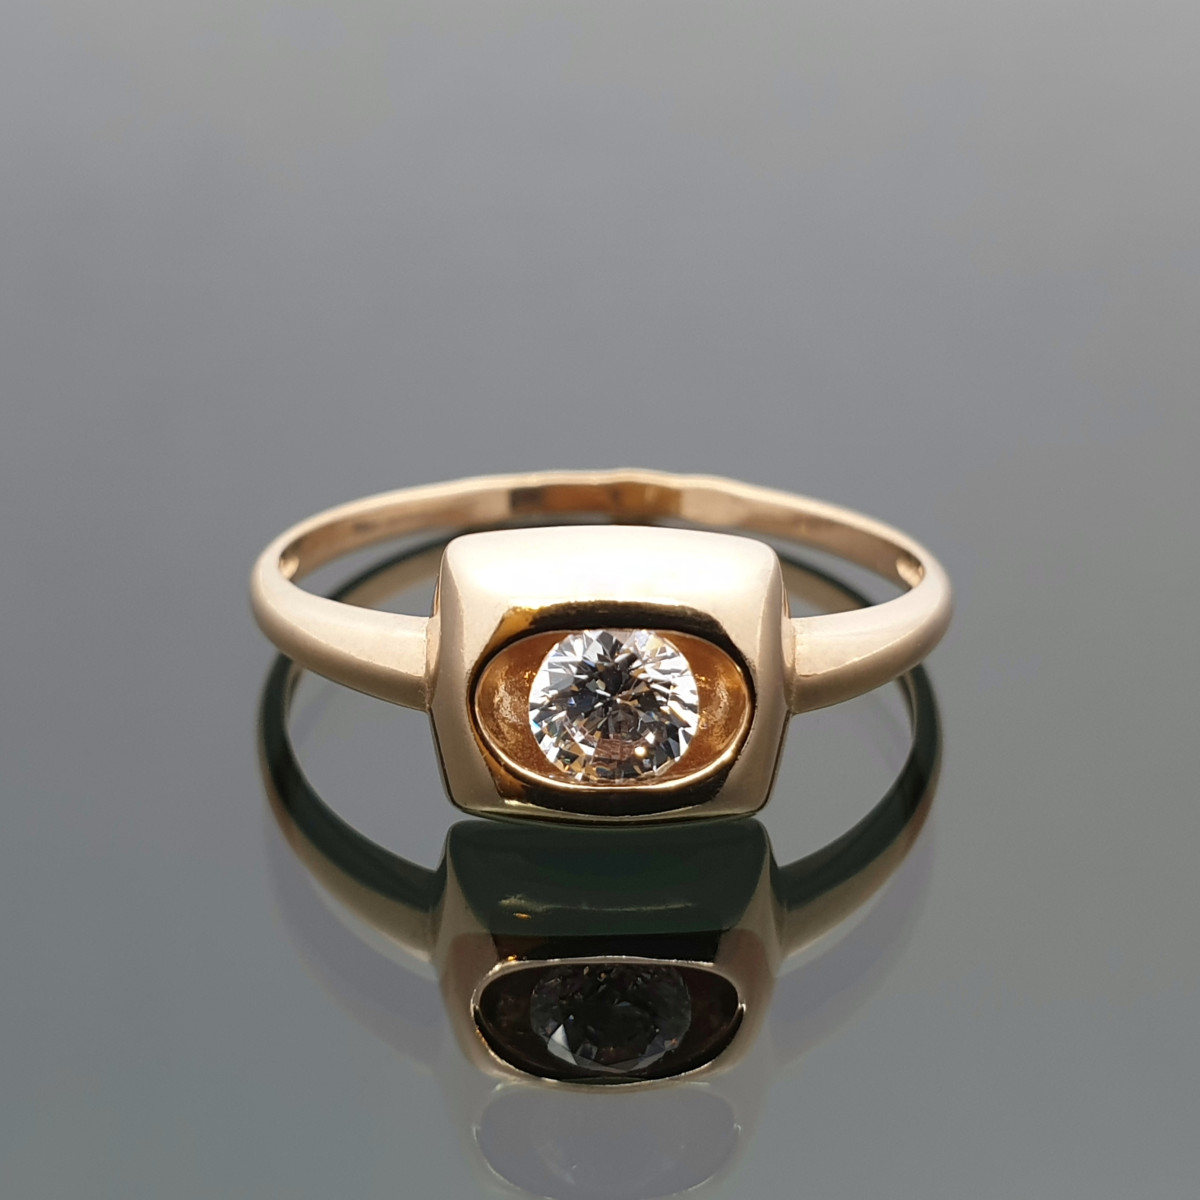 Auksinis žiedas dekoruotas didele cirkonio akute